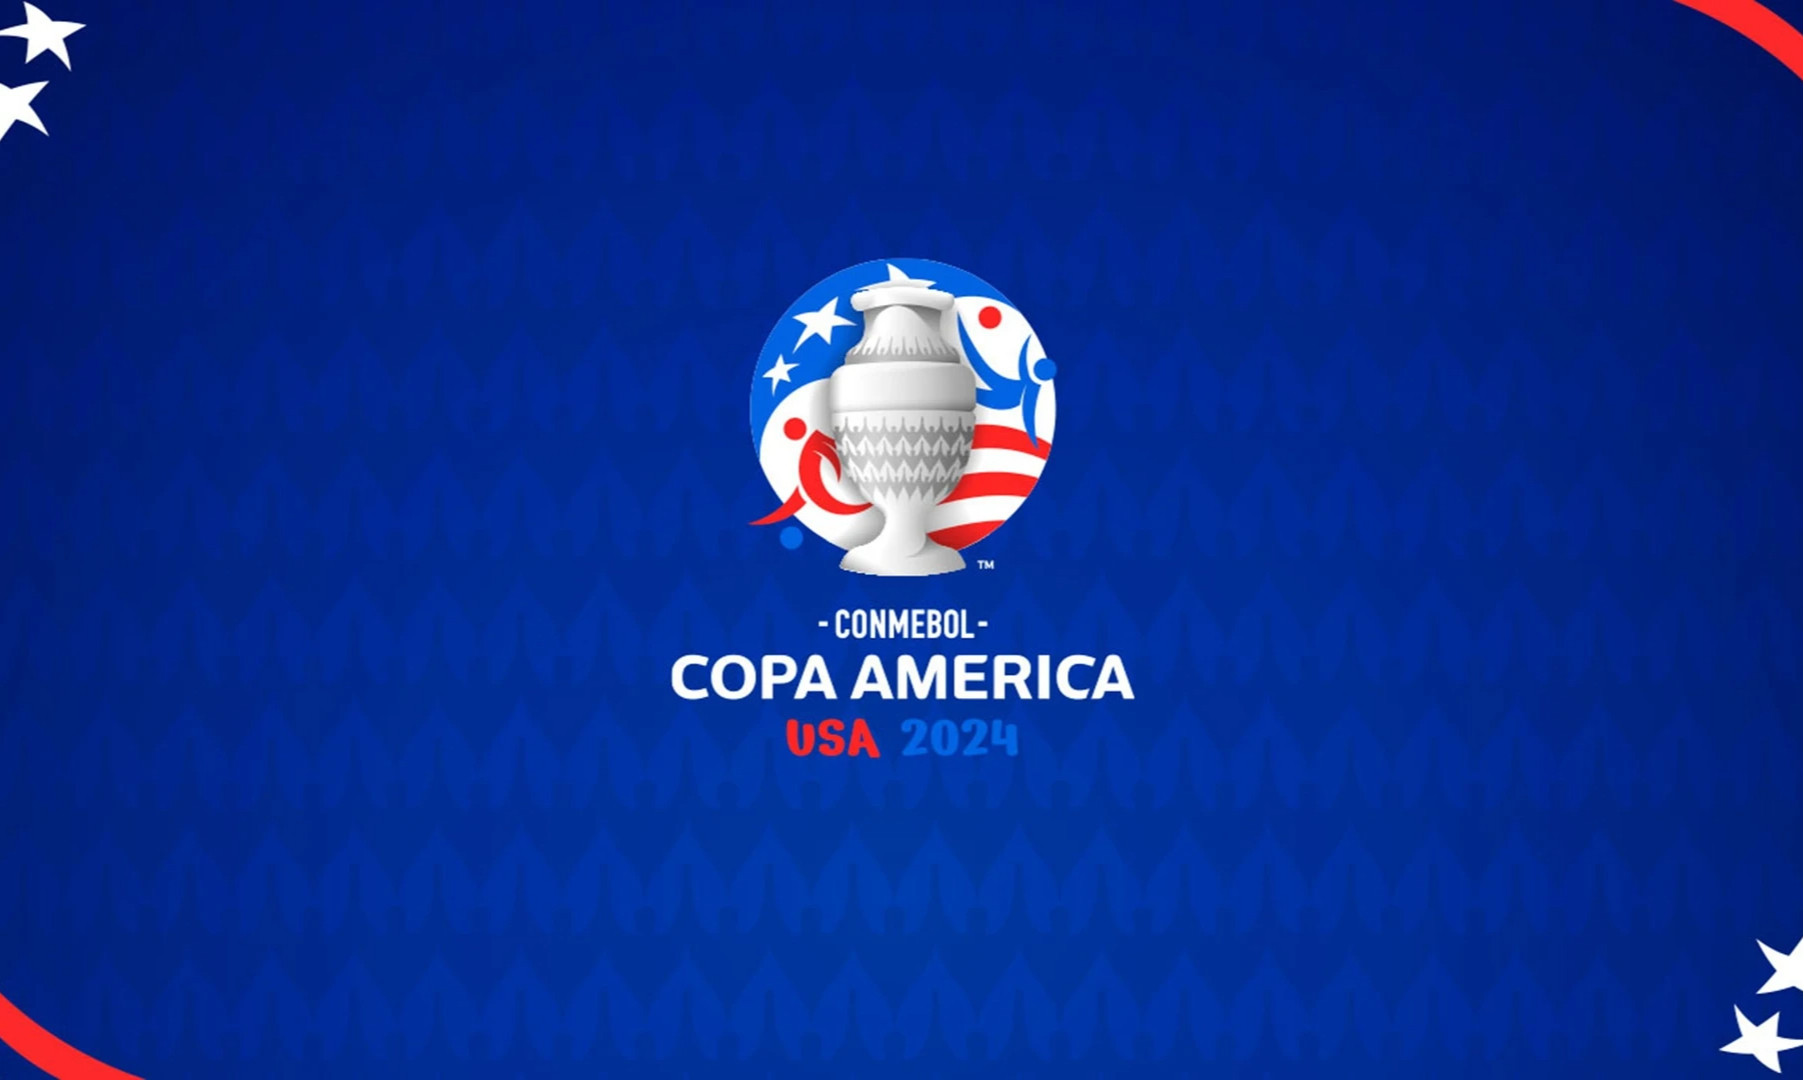 Бразилия с дублем Винисиуса разгромила Парагвай, Колумбия не заметила Коста-Рику во 2 туре Копа Америка